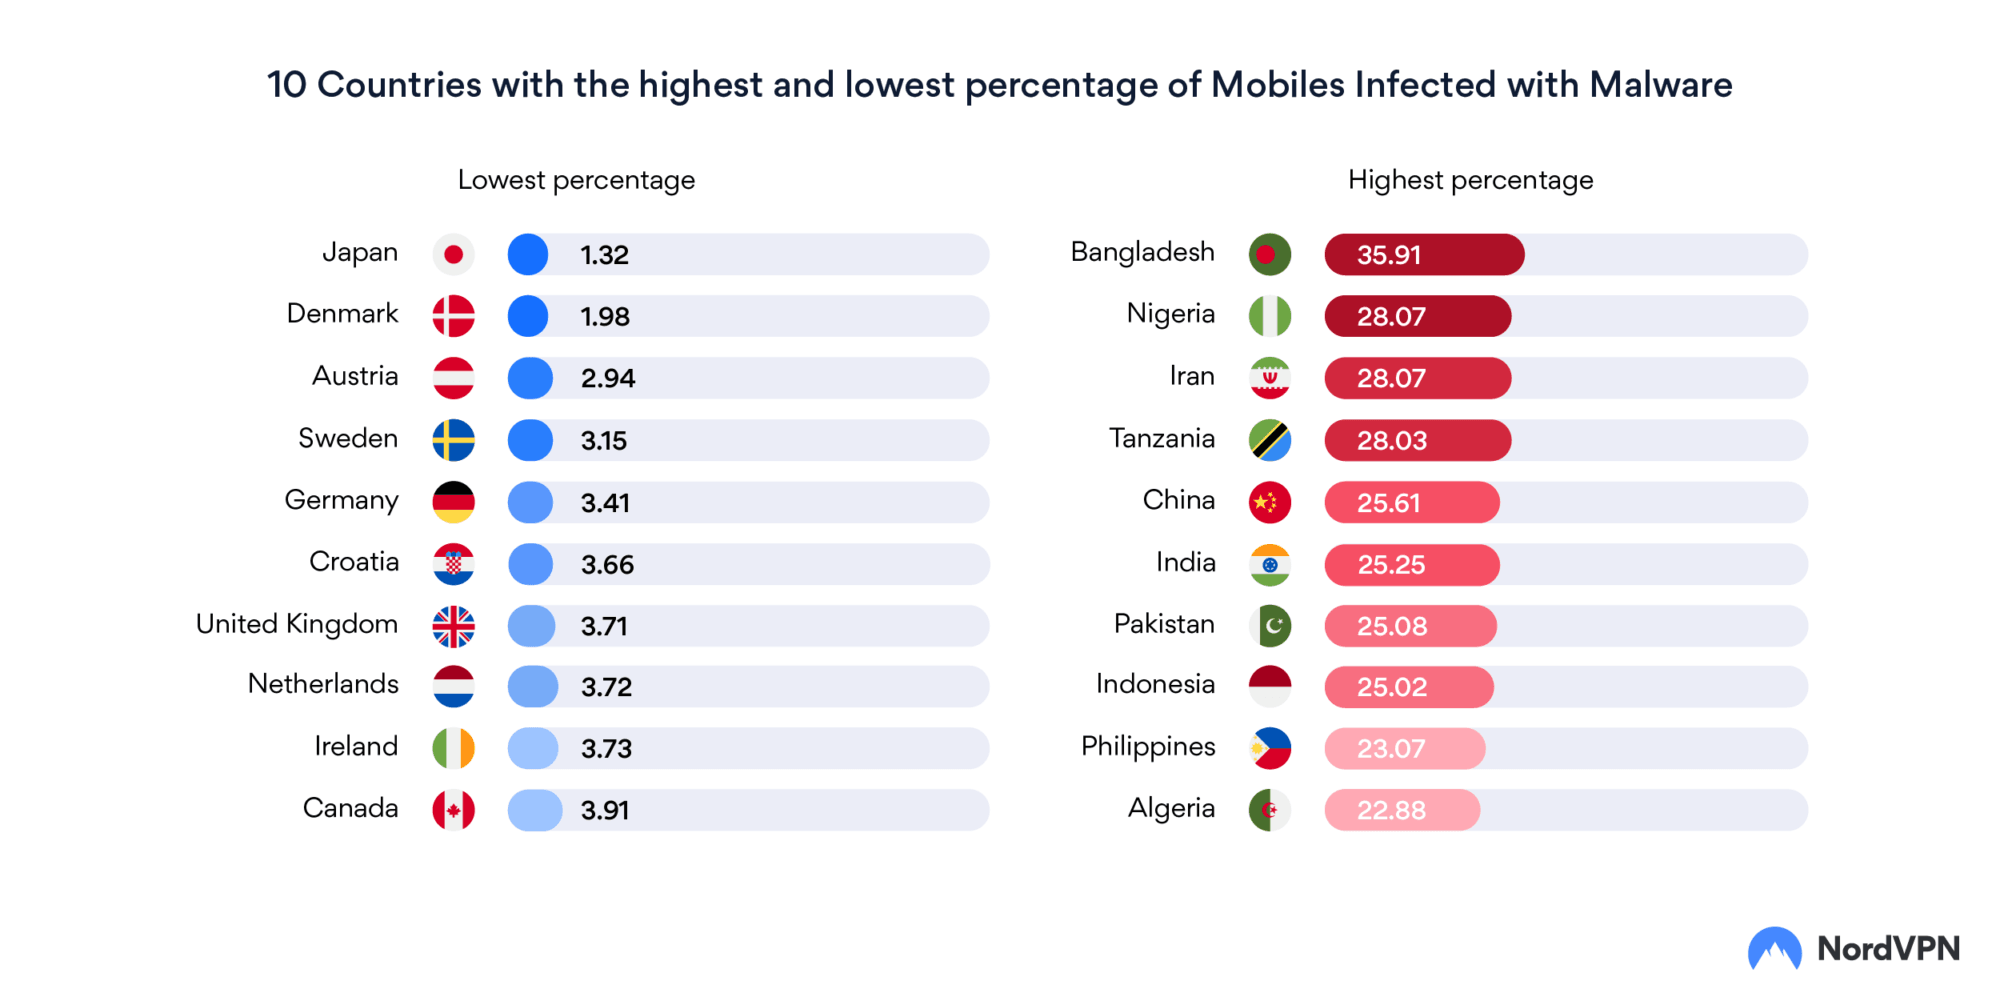 10 negara teratas dengan persentase serangan malware tertinggi dan terendah; Hati-hati dengan Bangladesh 1